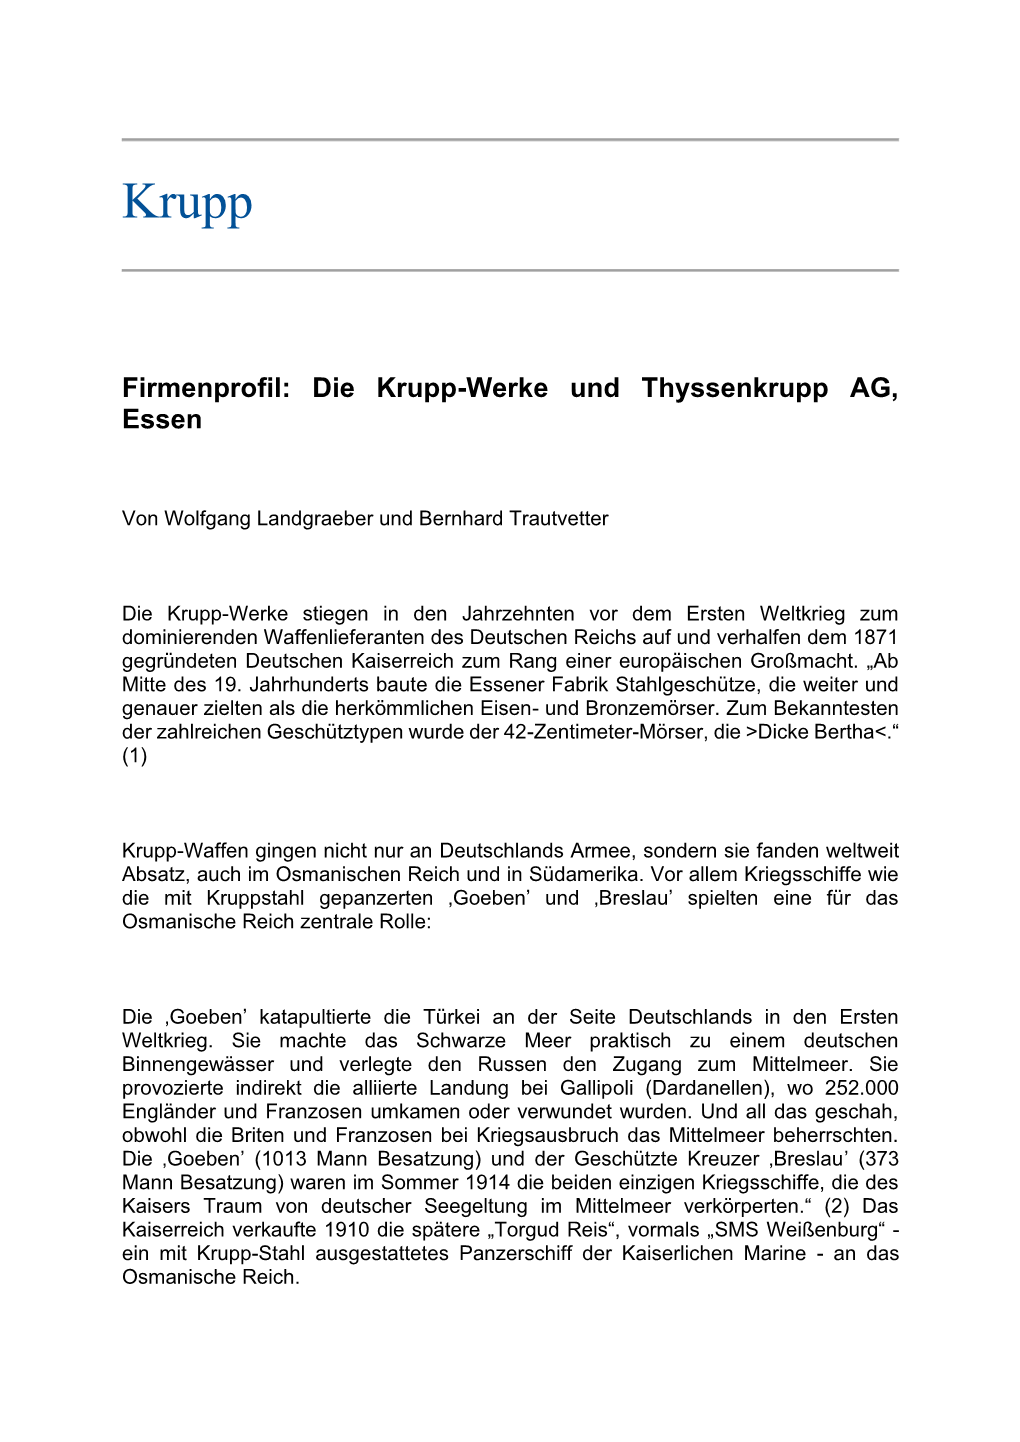 Firmenprofil: Die Krupp-Werke Und Thyssenkrupp AG, Essen